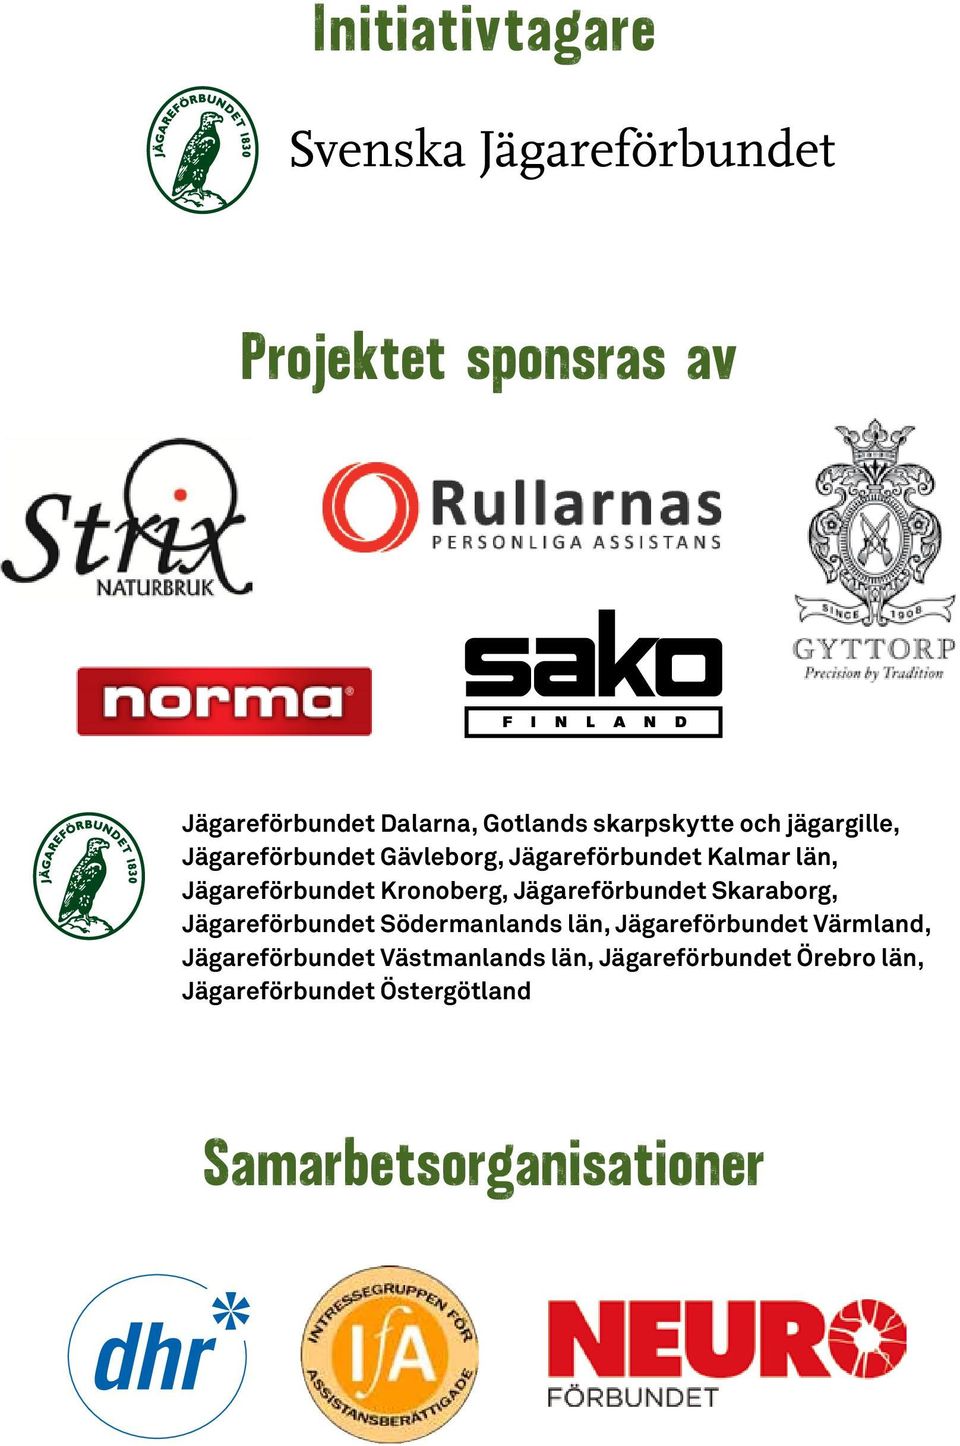 Jägareförbundet Skaraborg, Jägareförbundet Södermanlands län, Jägareförbundet Värmland,